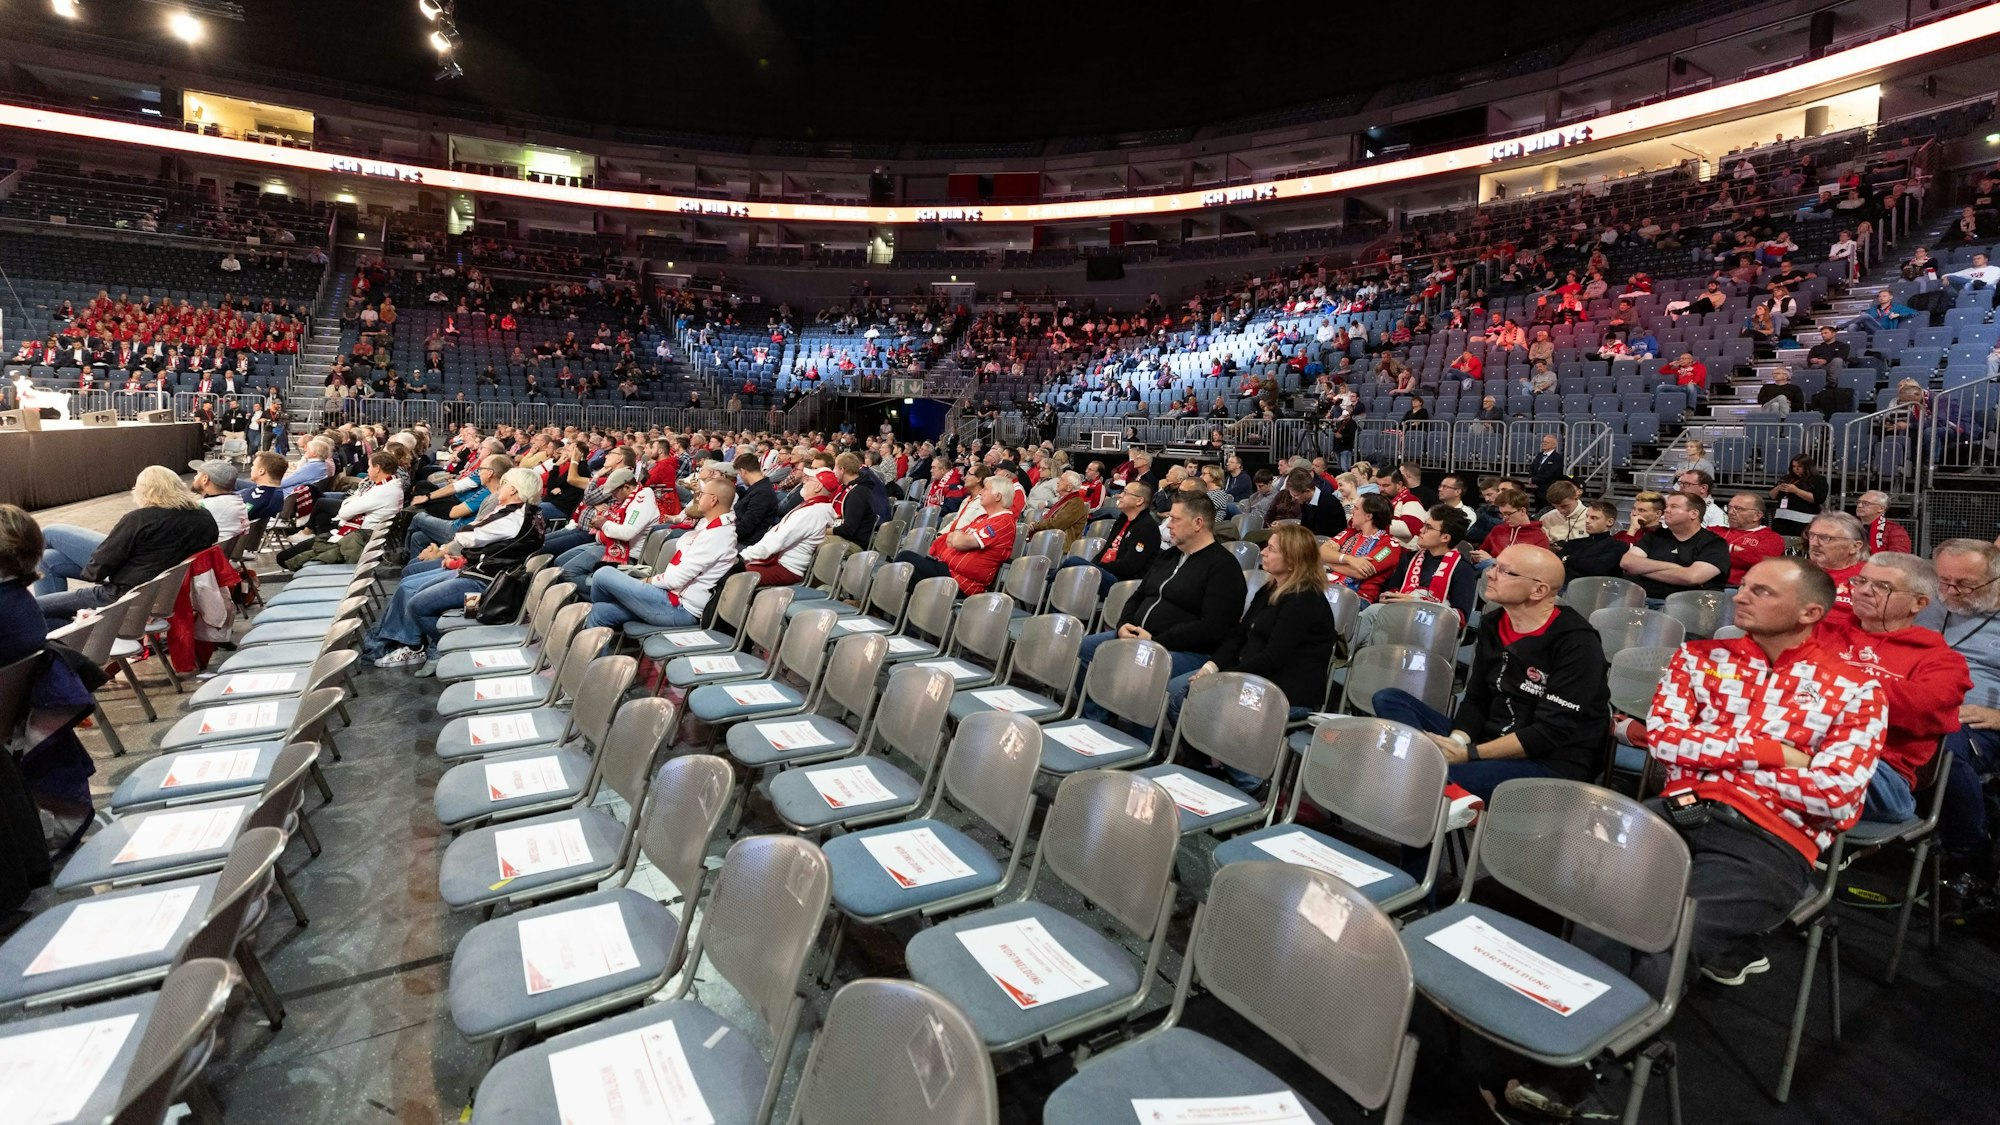 Mitgliederversammlung des 1. FC Köln in der Lanxess-Arena in Köln.